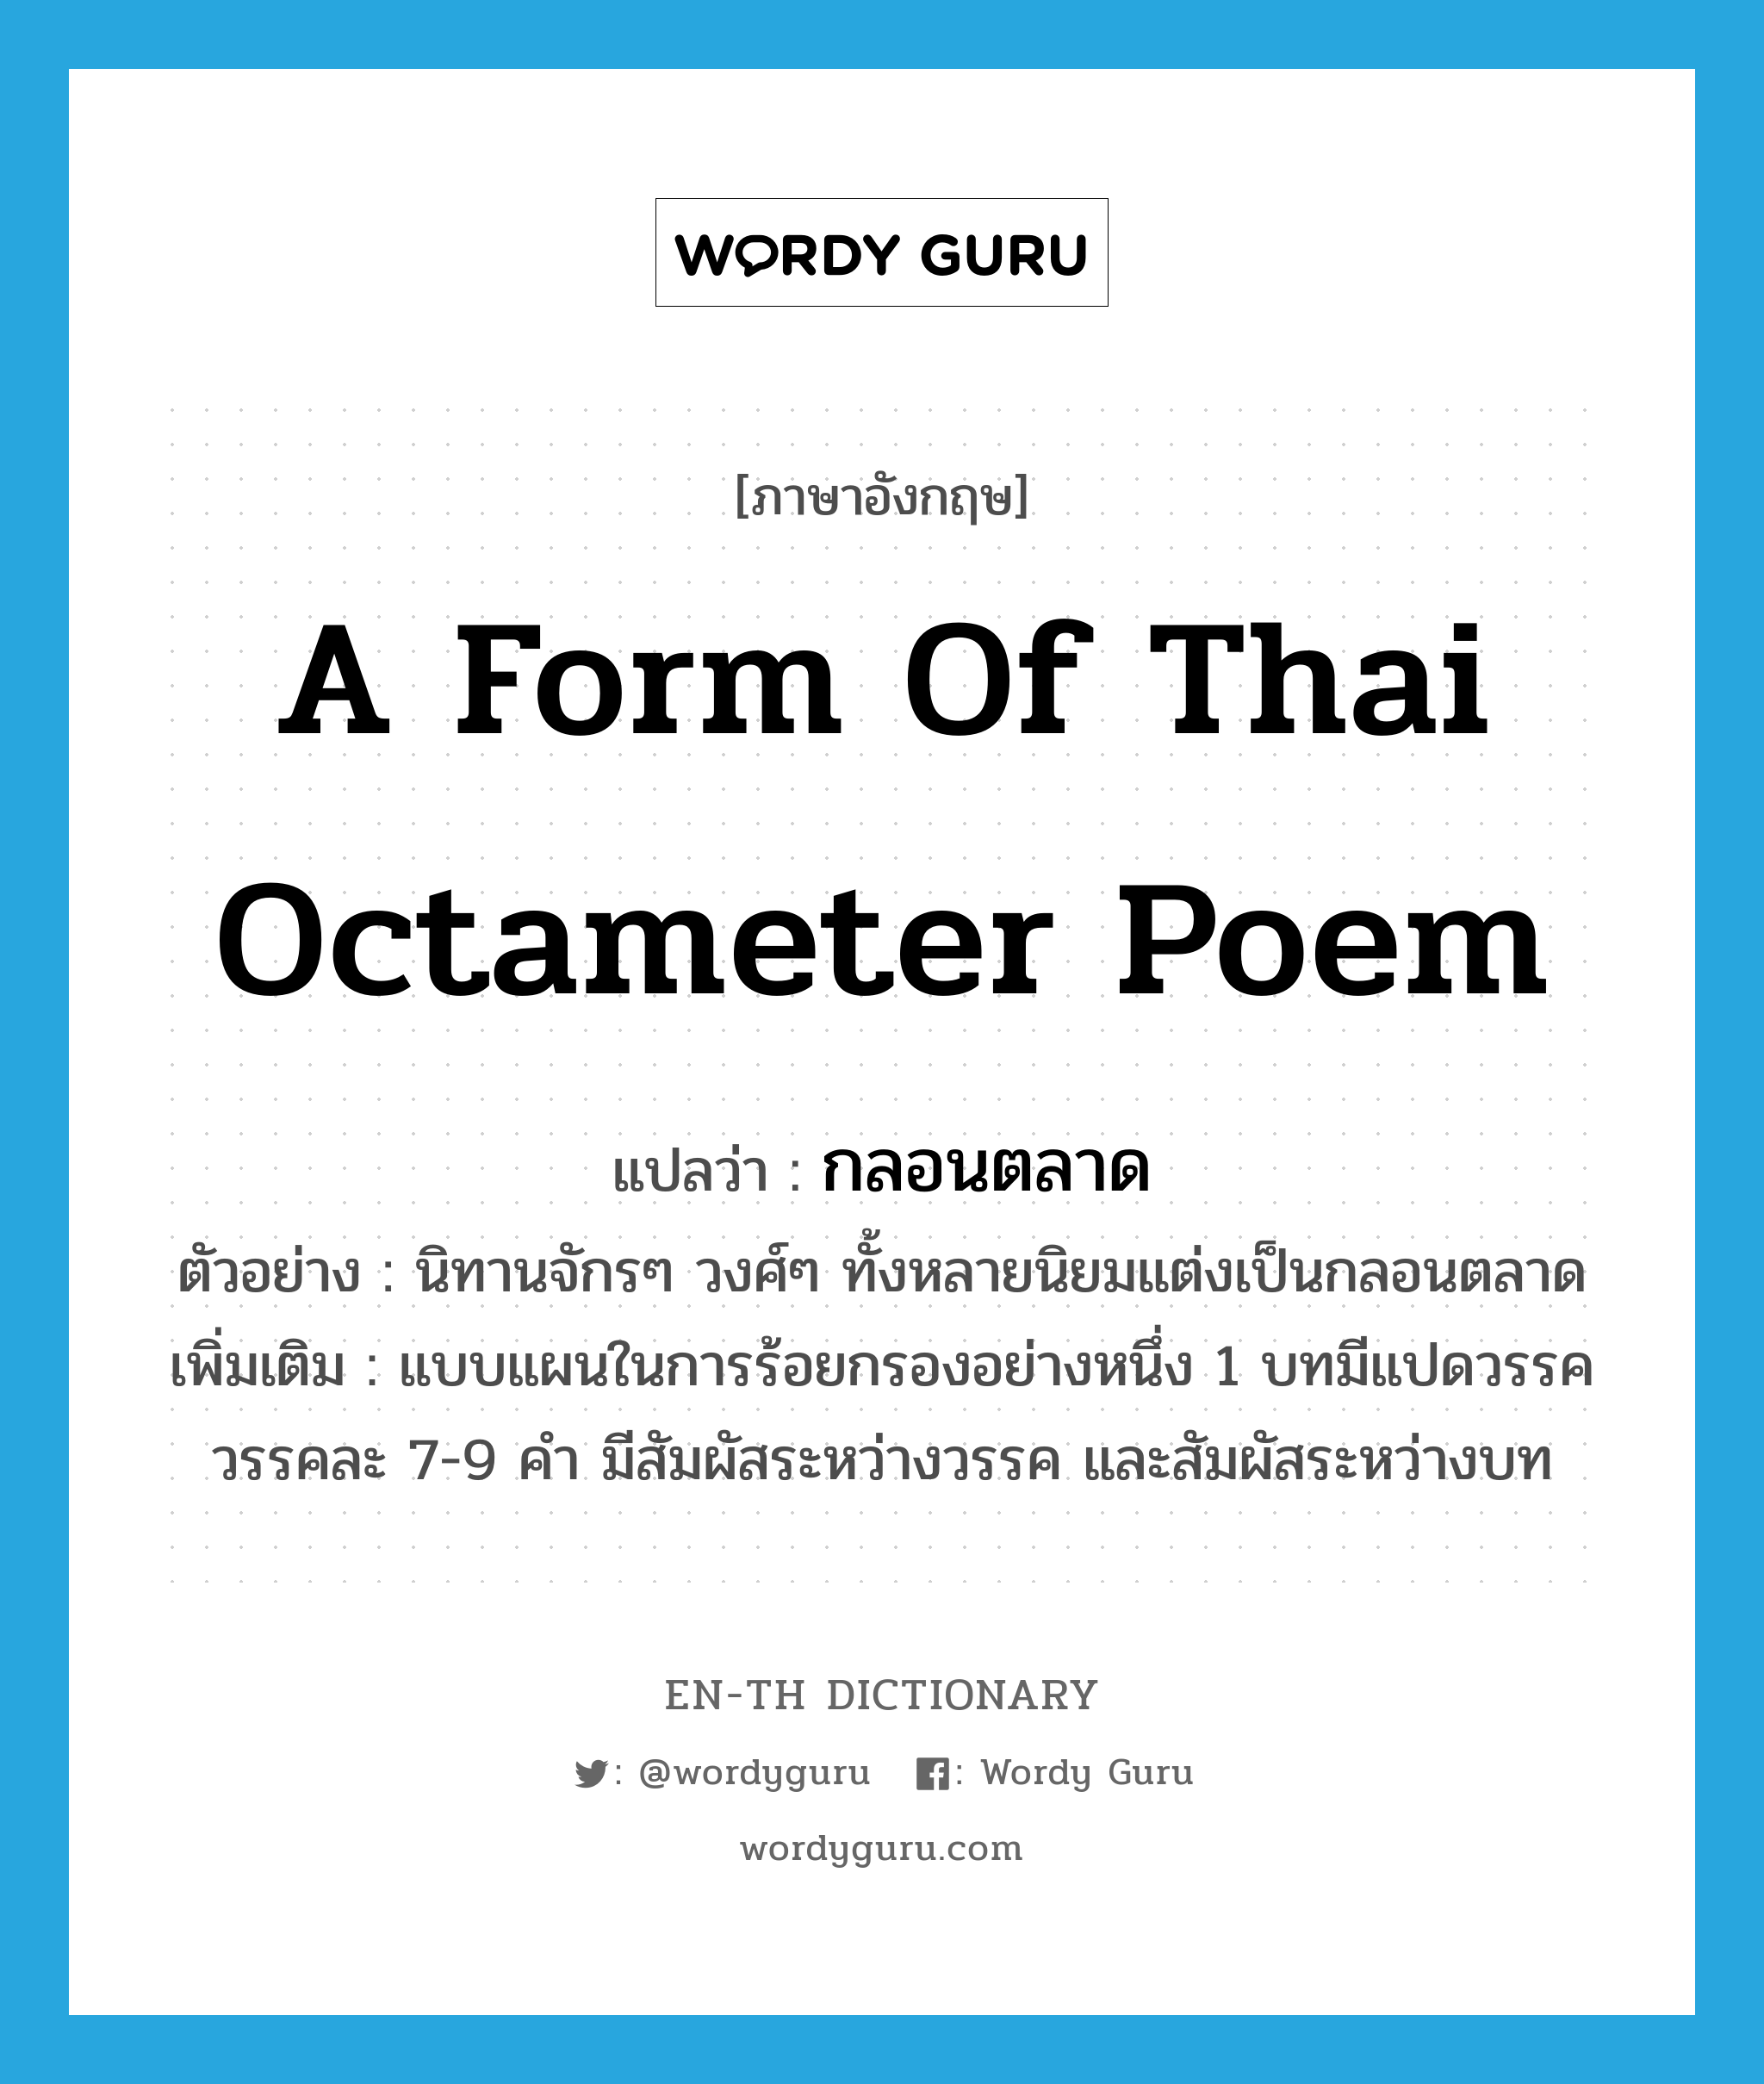 กลอนตลาด ภาษาอังกฤษ?, คำศัพท์ภาษาอังกฤษ กลอนตลาด แปลว่า a form of Thai octameter poem ประเภท N ตัวอย่าง นิทานจักรๆ วงศ์ๆ ทั้งหลายนิยมแต่งเป็นกลอนตลาด เพิ่มเติม แบบแผนในการร้อยกรองอย่างหนึ่ง 1 บทมีแปดวรรค วรรคละ 7-9 คำ มีสัมผัสระหว่างวรรค และสัมผัสระหว่างบท หมวด N